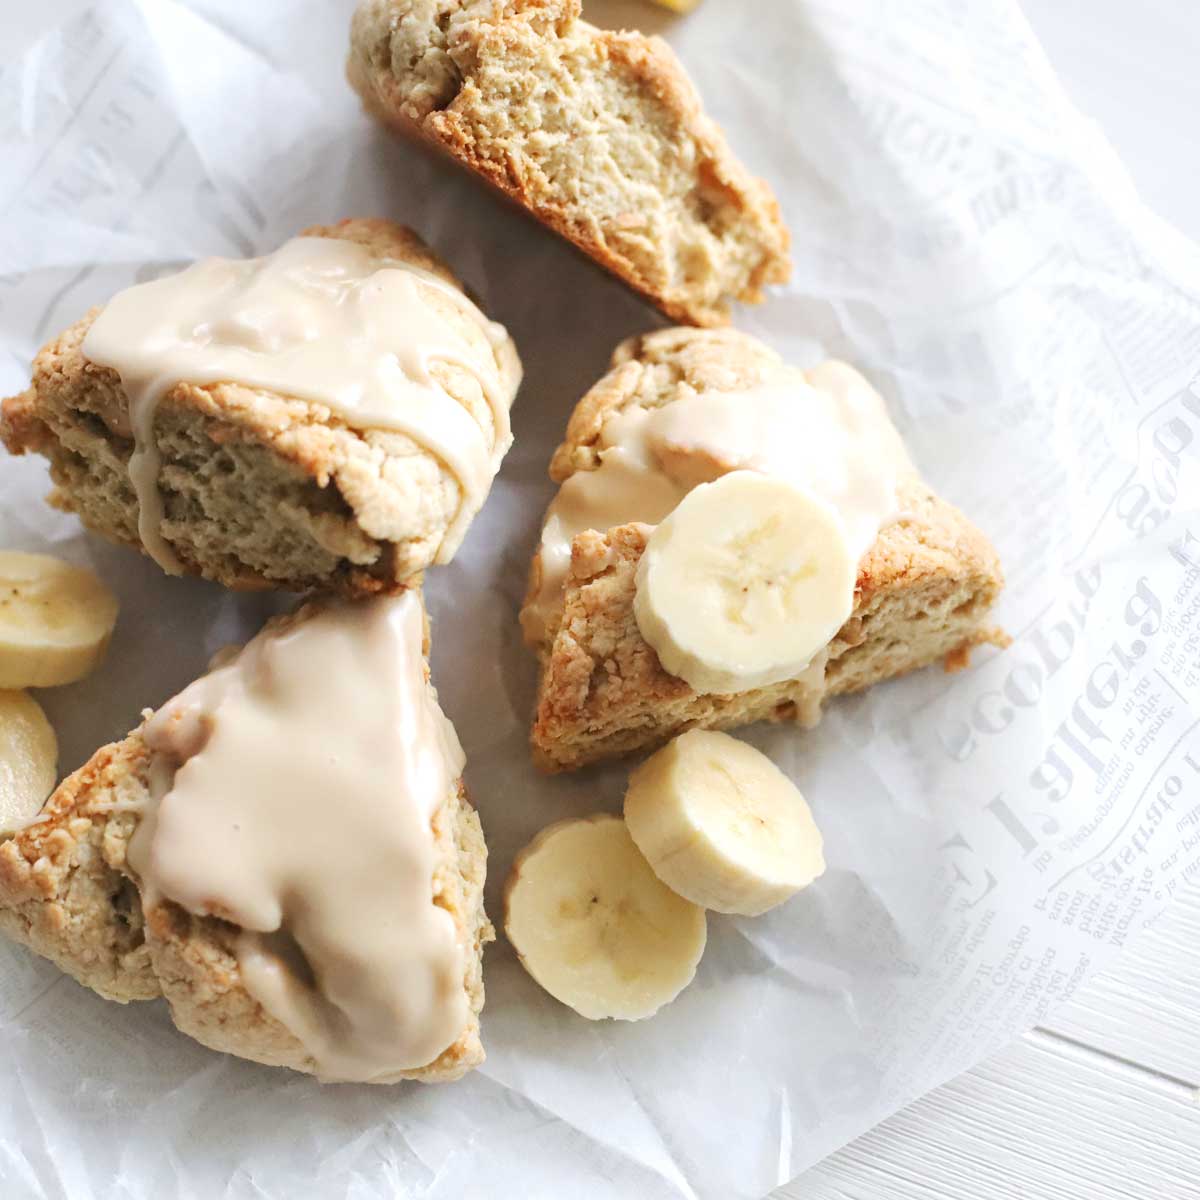 Homemade Banana Nut Scones with Maple Glaze (Healthy, Vegan Recipe) - Banana Nut Scones